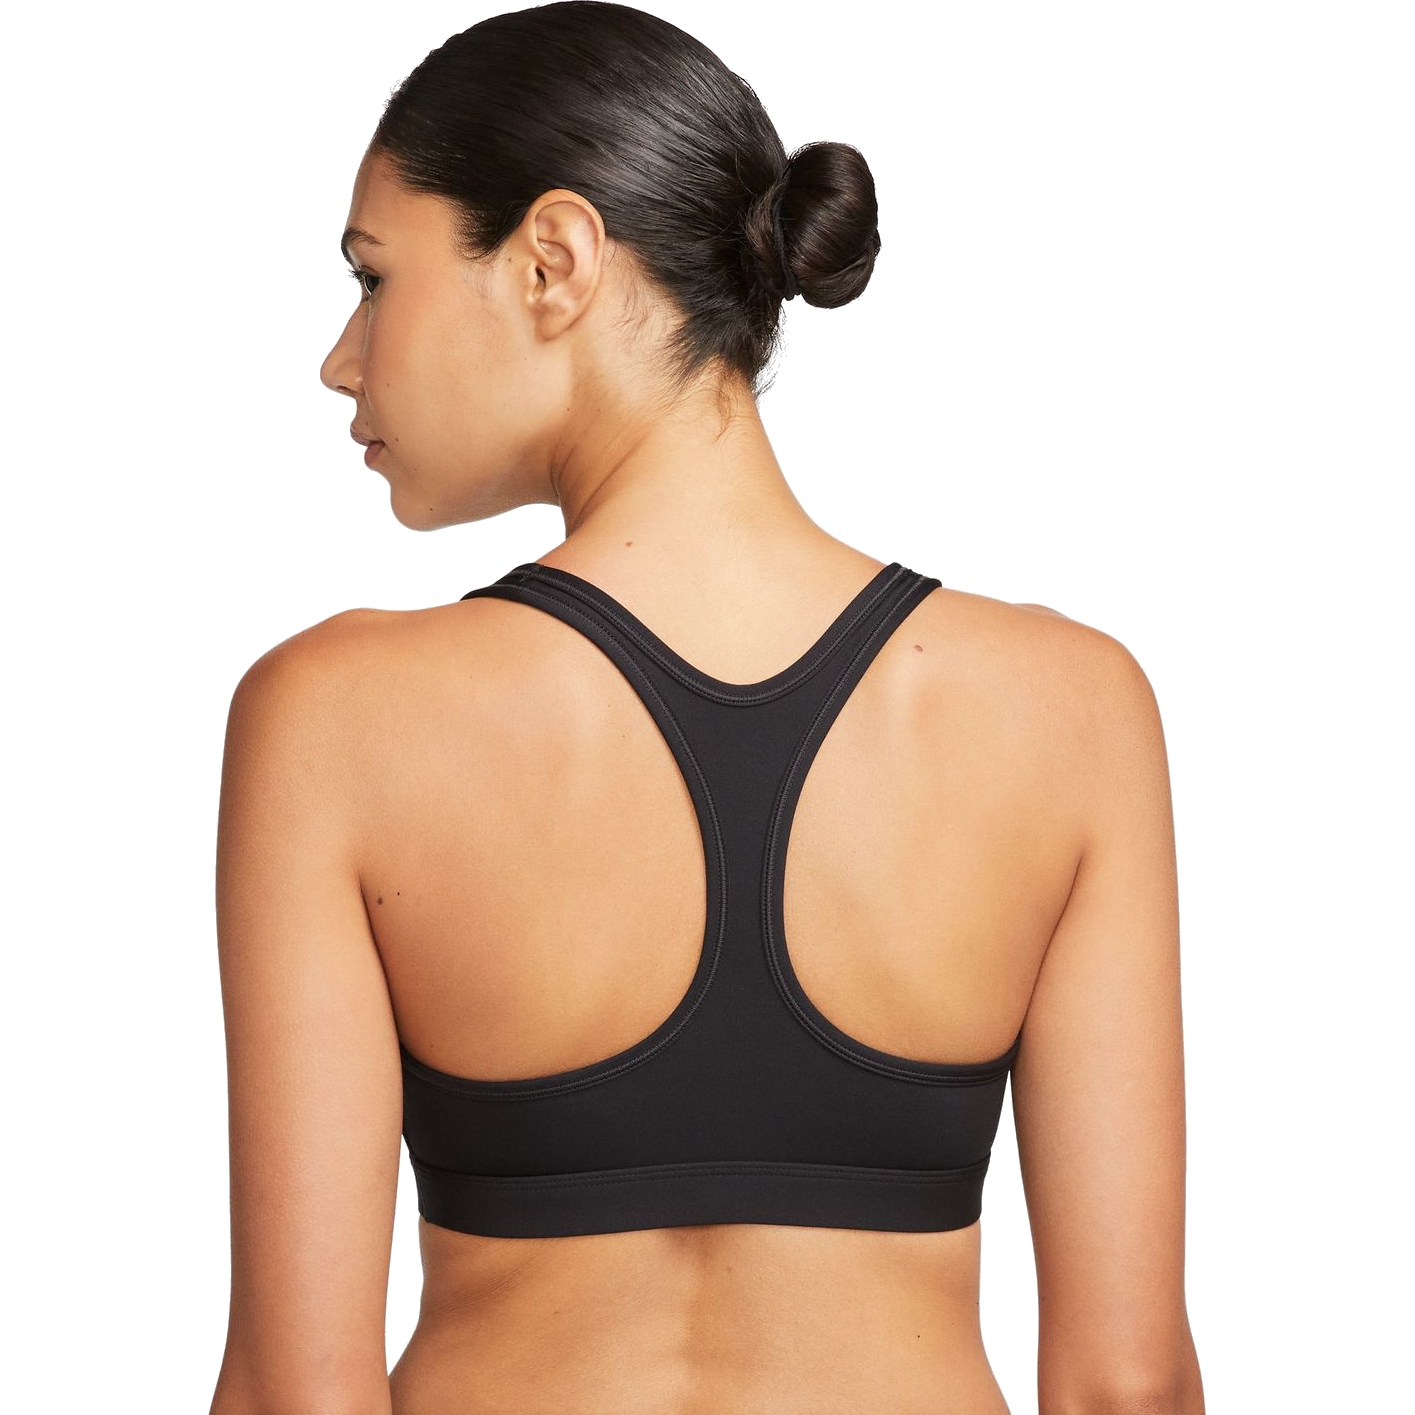 Nike Sports bra SWOOSH ON THE RUN in black/ white